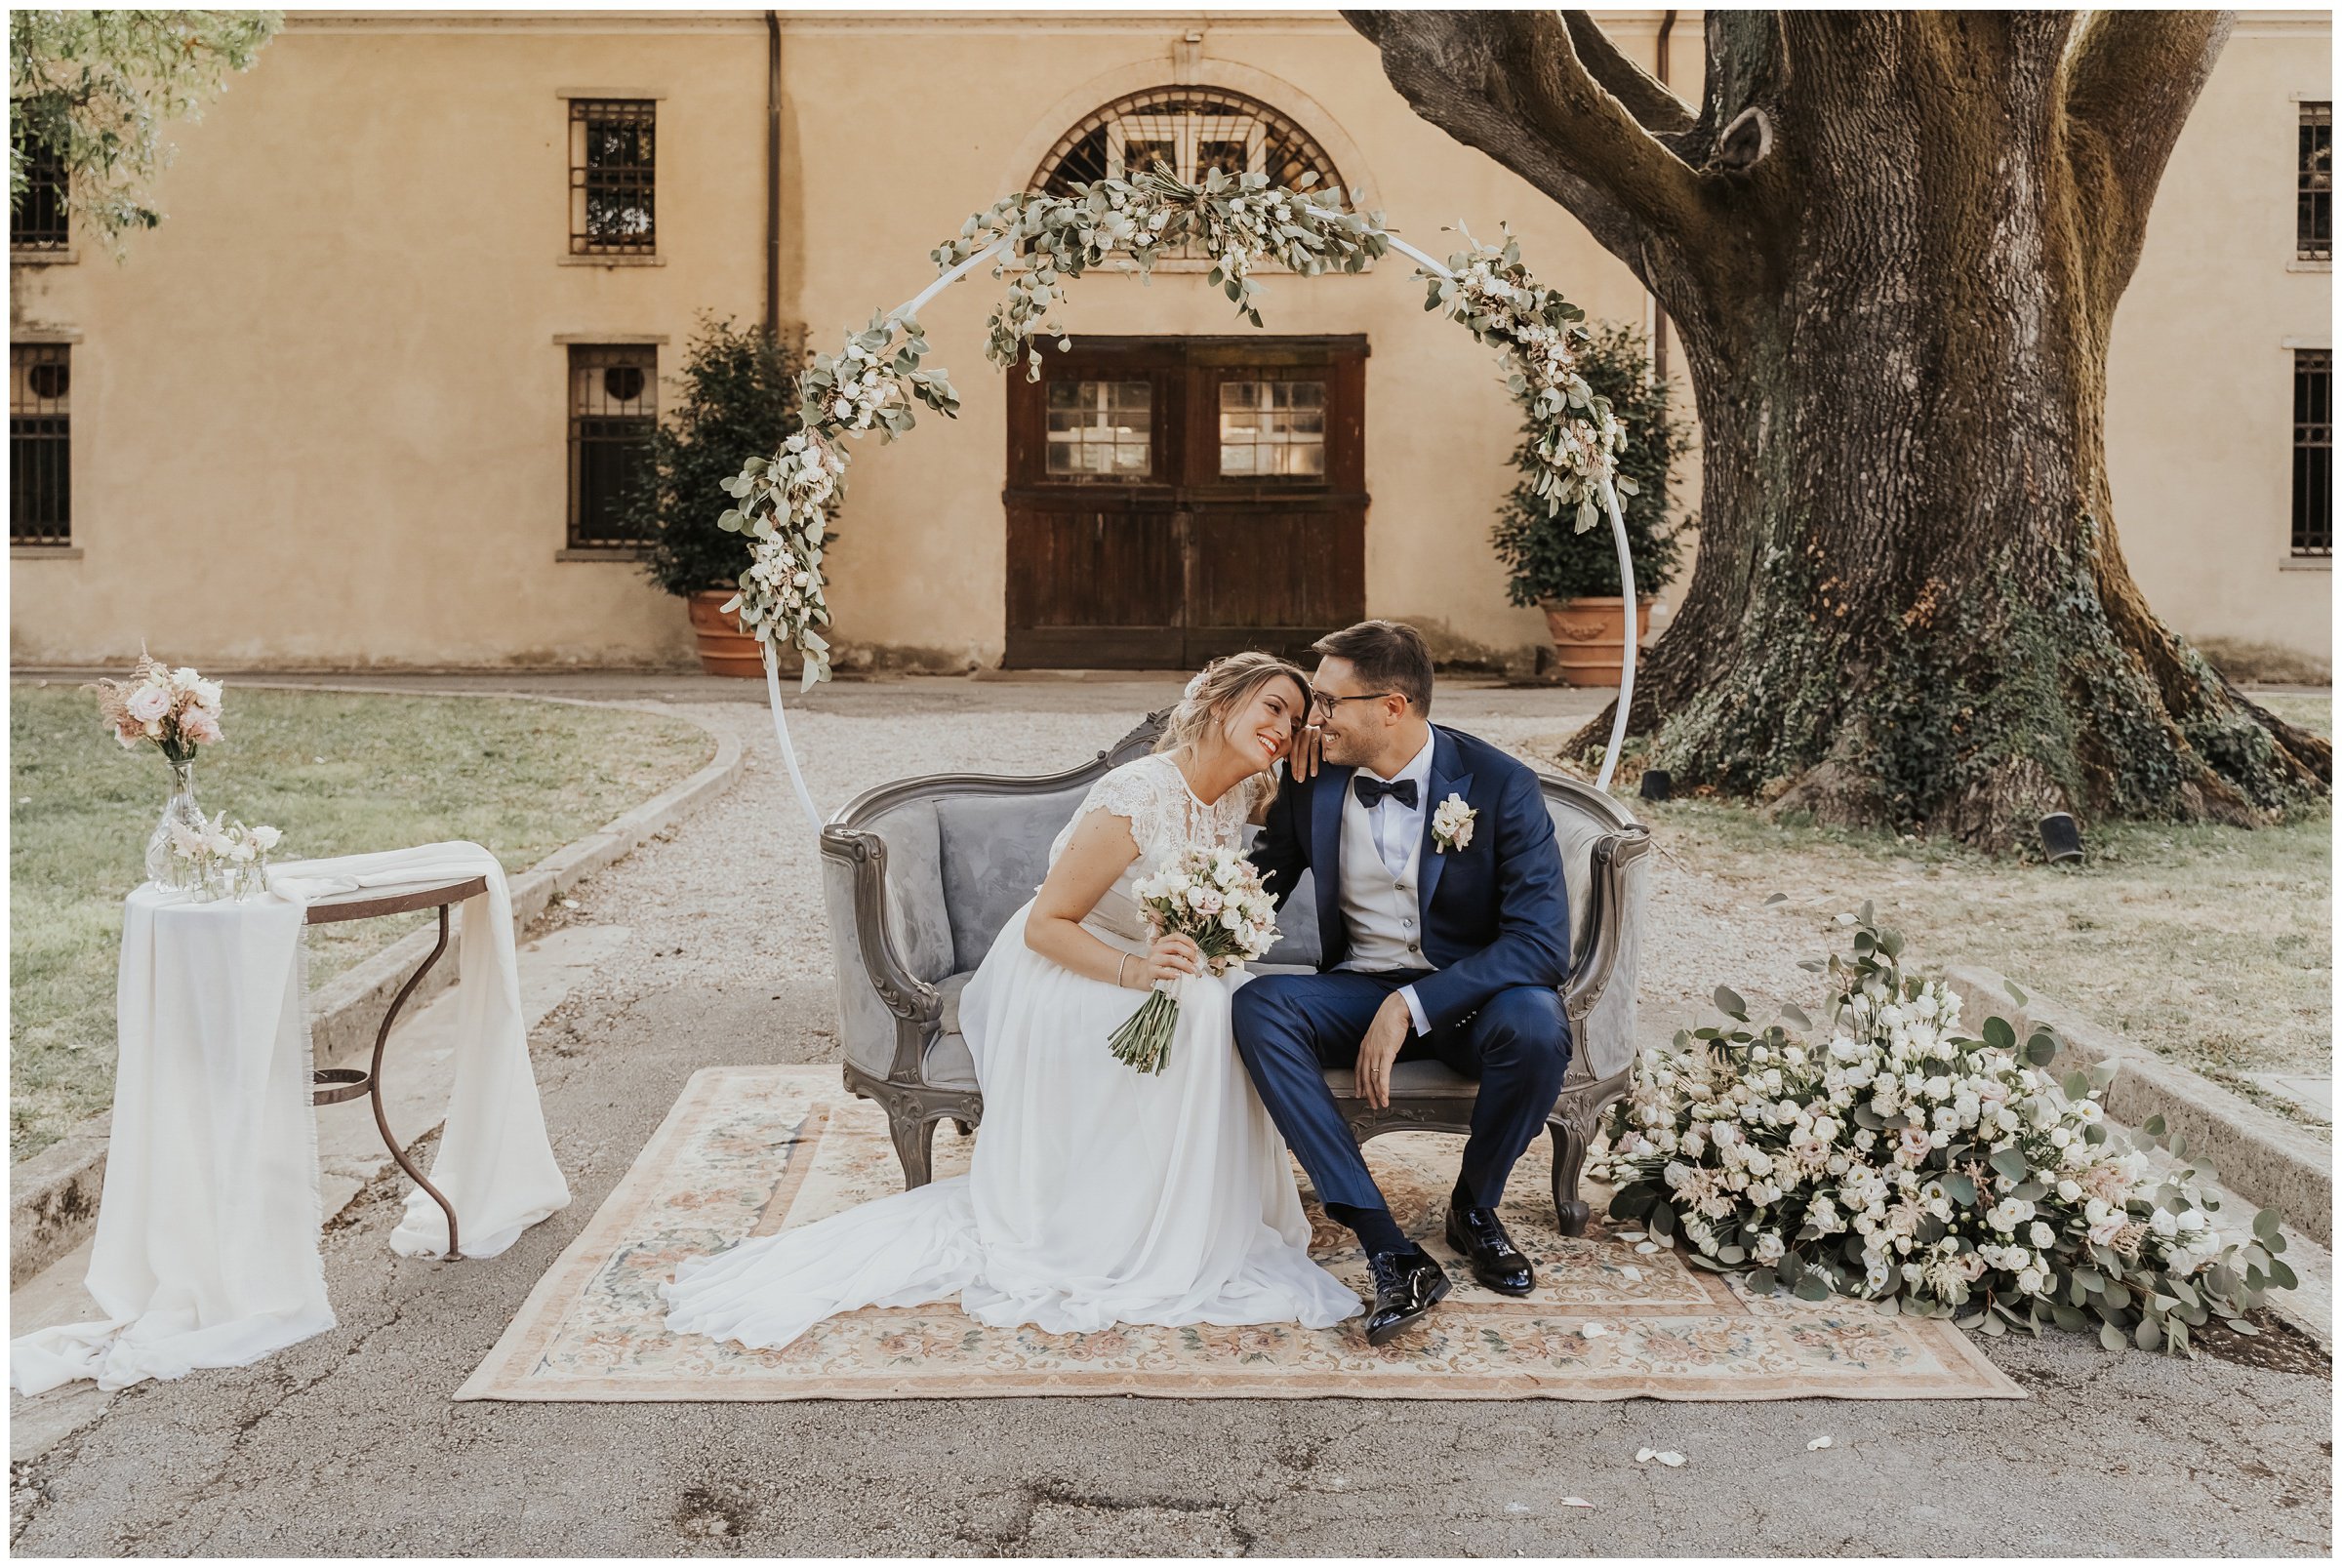 Matrimonio-villa-foscarini-cornaro-fotografo-matrimonio-treviso-fotografo-matrimonio-venezia-37.jpg